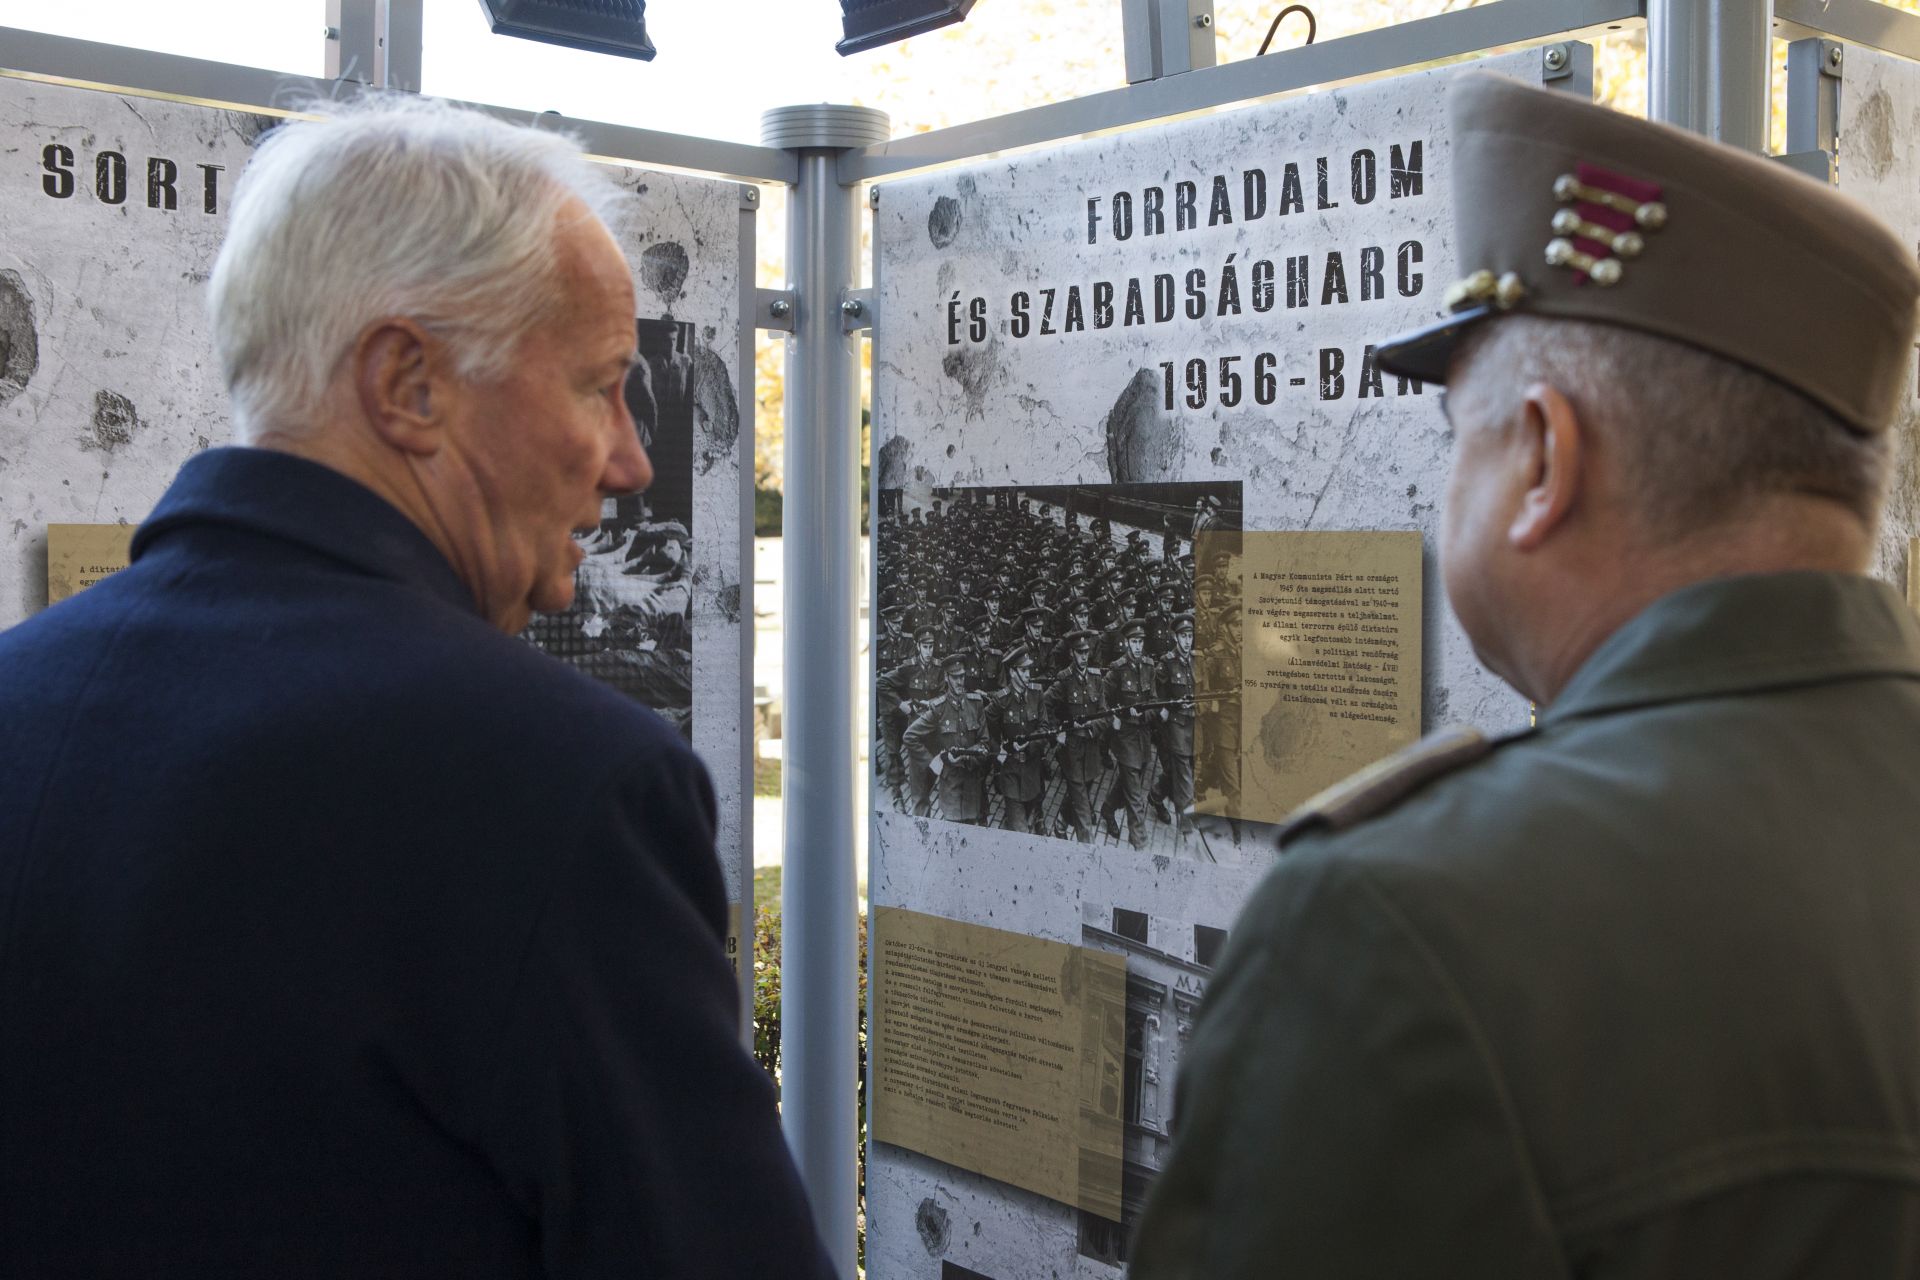 A Kossuth téri sortűz áldozatainak emlékére nyílt kiállítás a Fiumei úti sírkertben